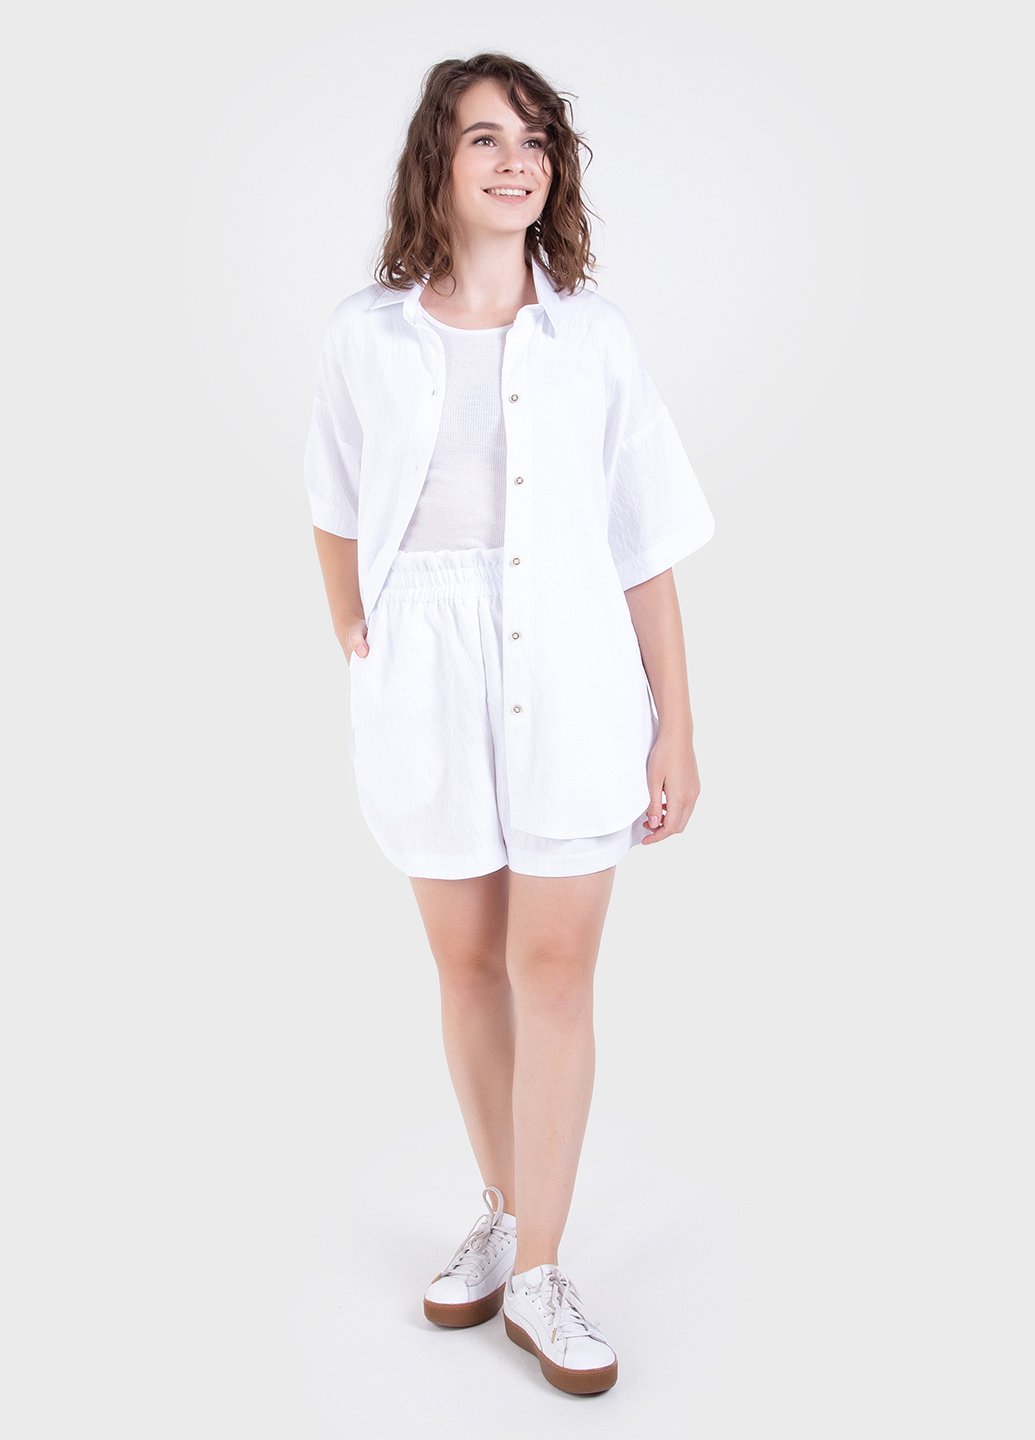 Купить Летний костюм женский двойка белого цвета: шорты, рубашка Merlini Мессина 100000144, размер 42-44 в интернет-магазине